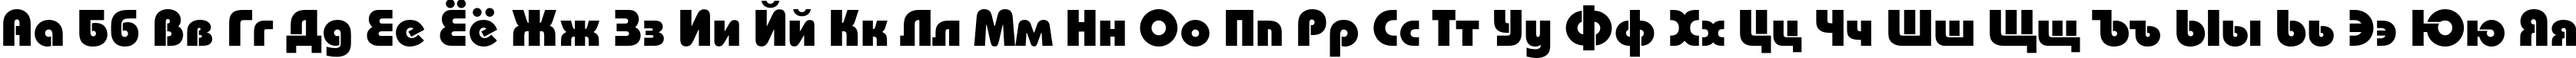 Пример написания русского алфавита шрифтом BauhausC Heavy